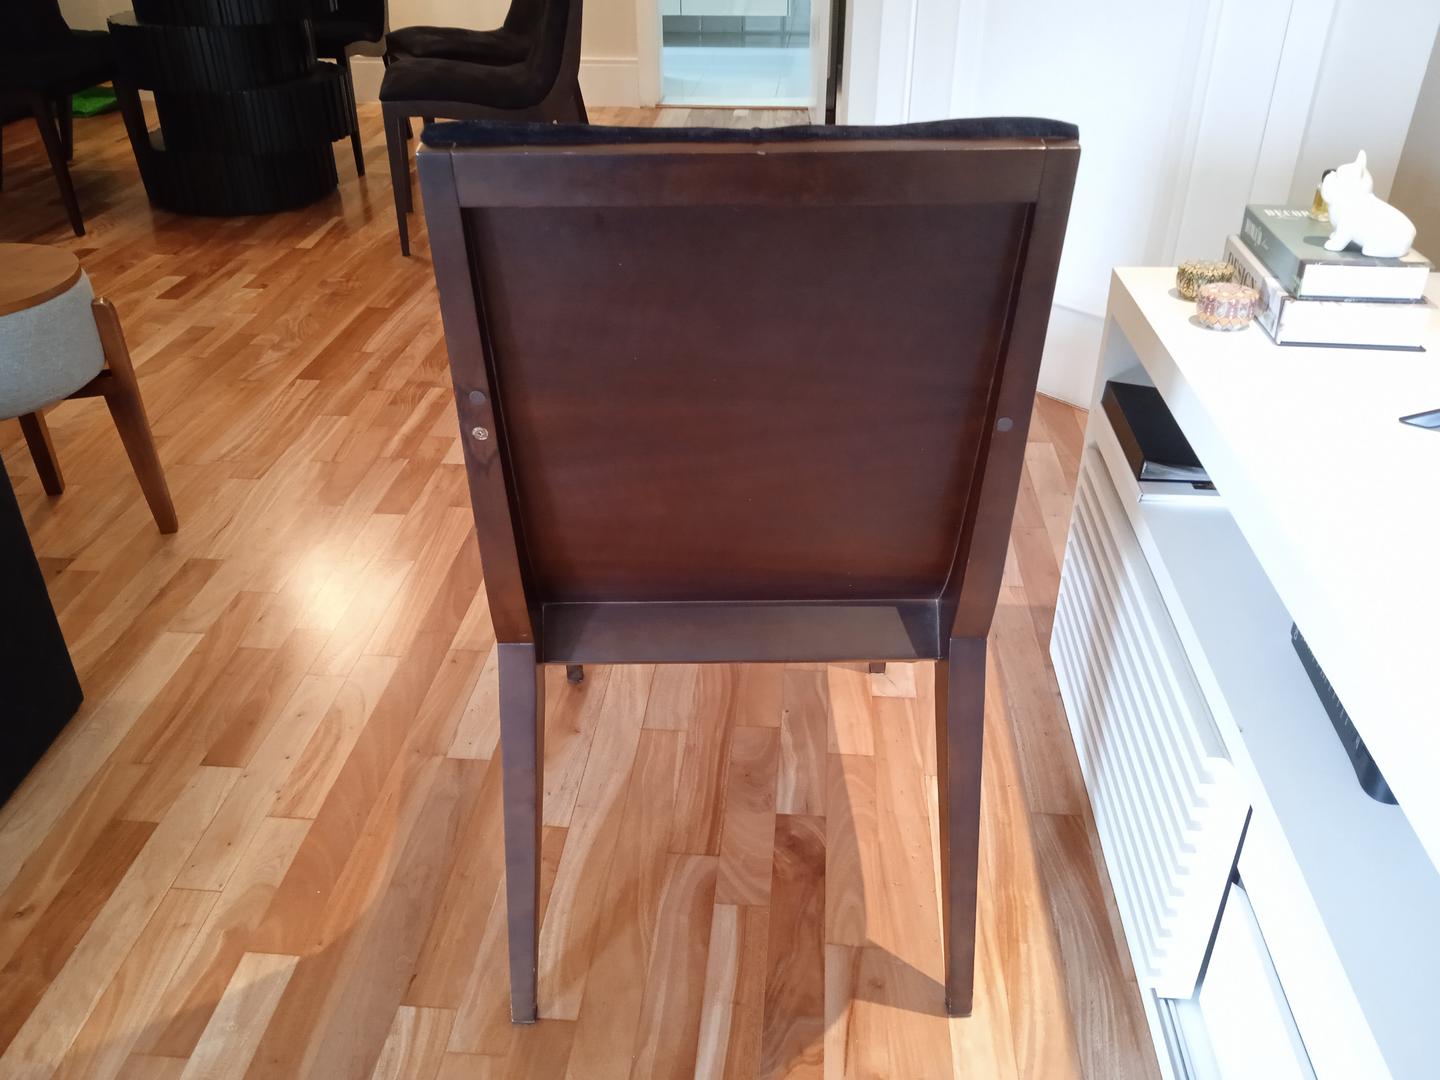 Cadeira fixa estofada s/ braços em Madeira / Estofado Preto 91 cm x 47 cm x 62 cm